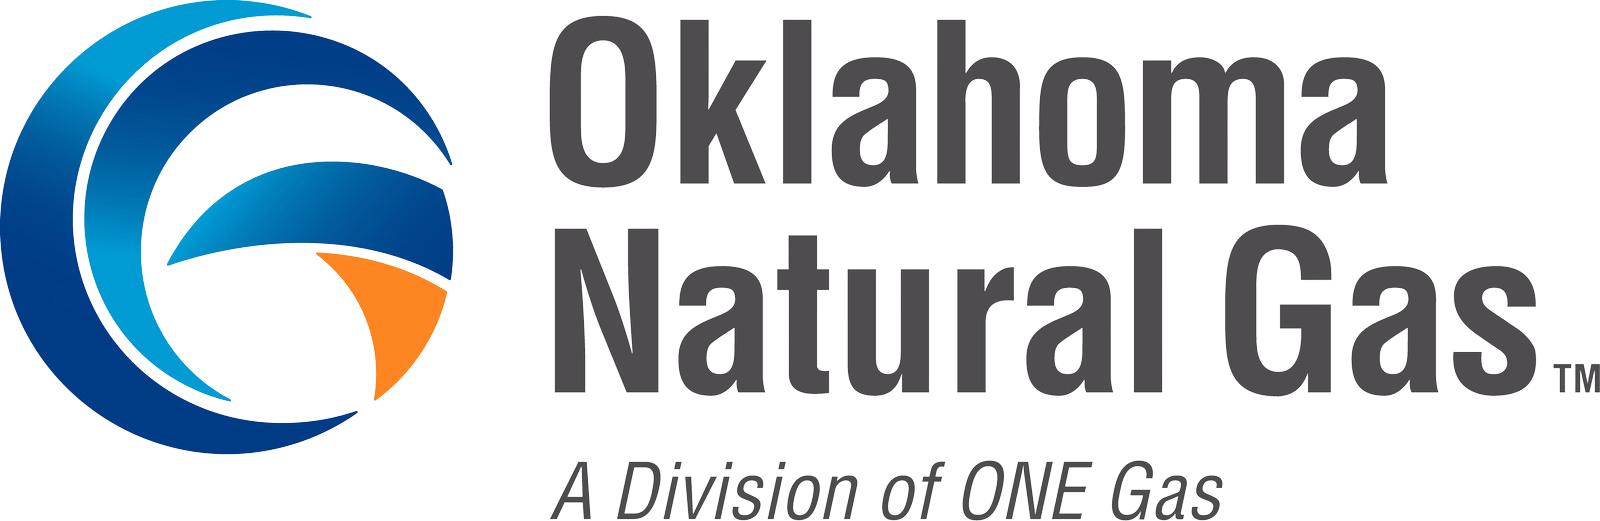 Oklahoma Natural Gas.png